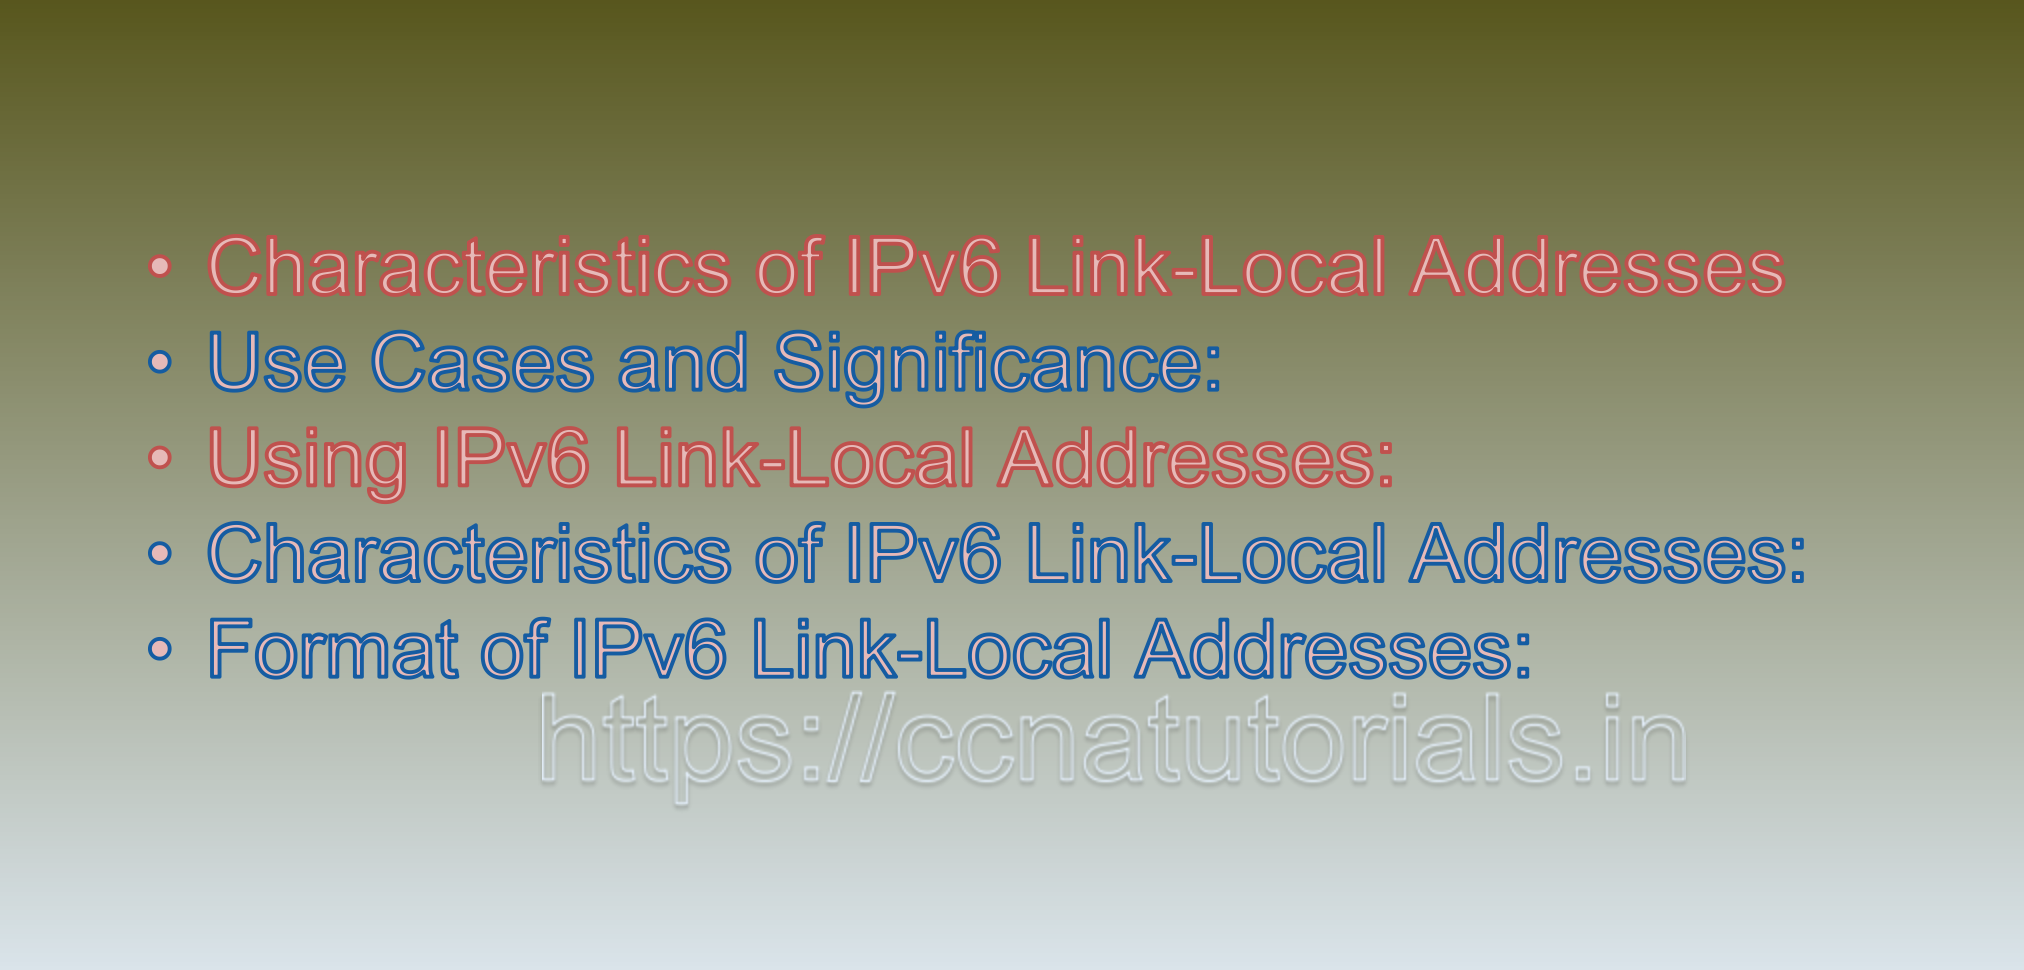 IPv6 Link-Local Addresses, ccna, ccna tutorials